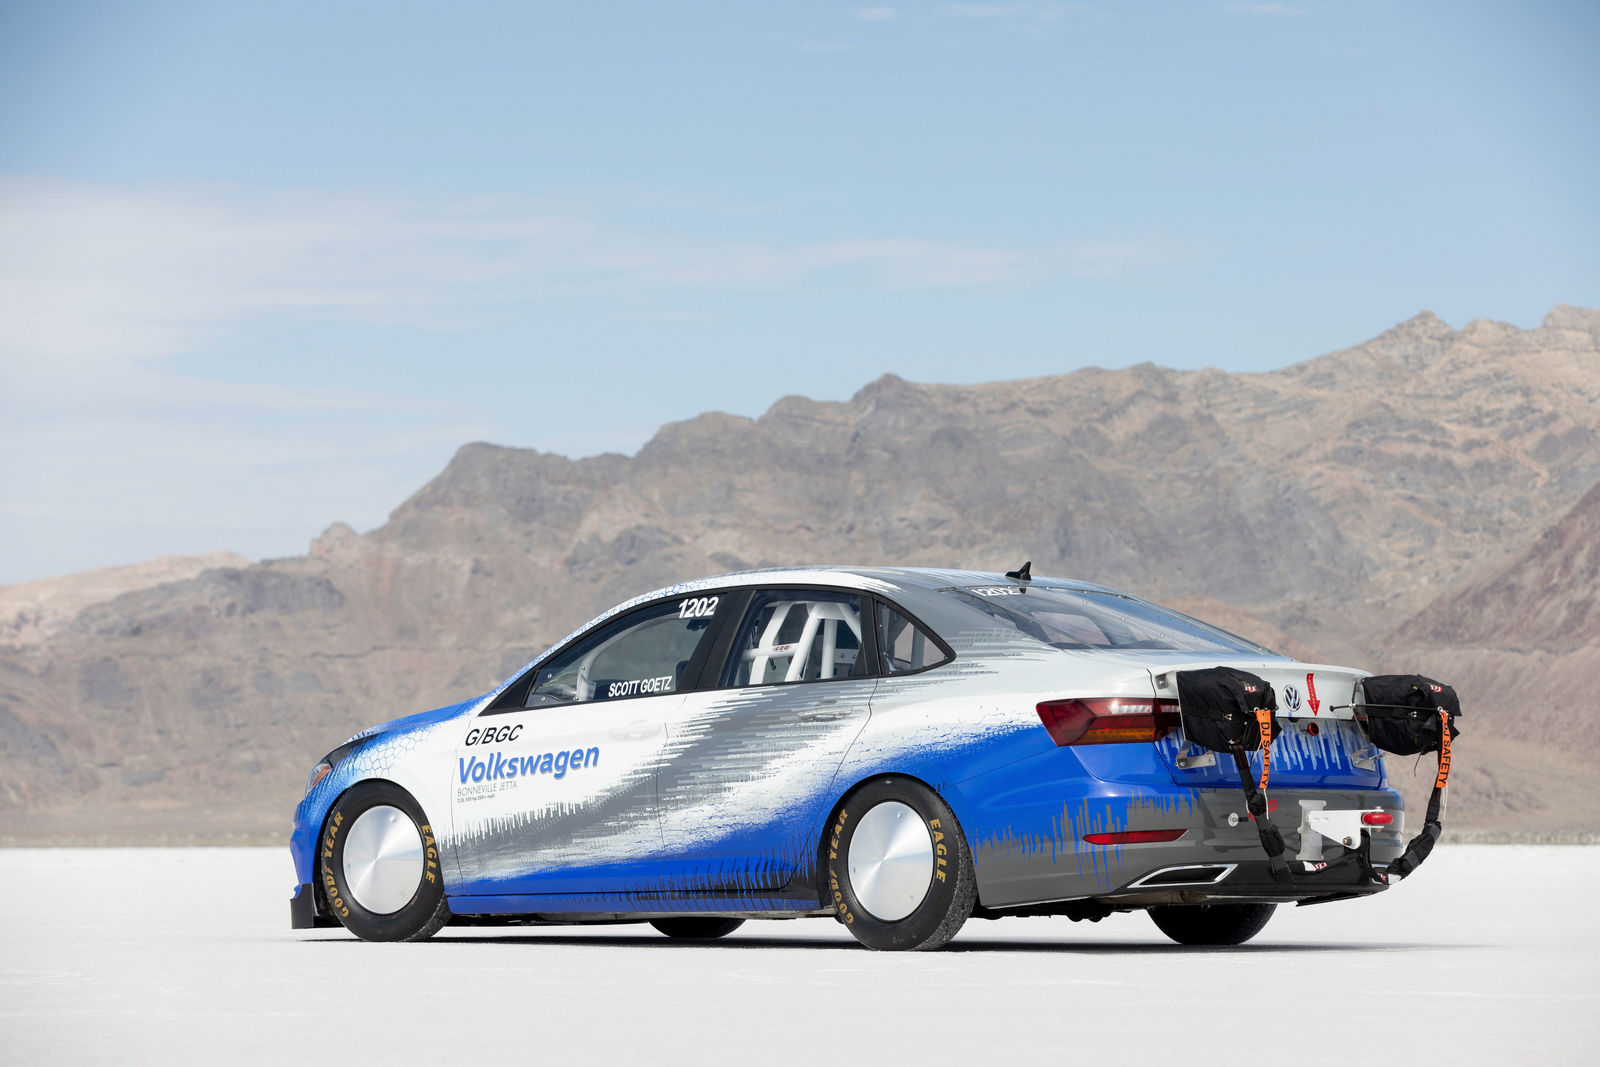 Modifizierter Jetta knackt in den USA mit 338 km/h den Geschwindigkeitsrekord in seiner Klasse